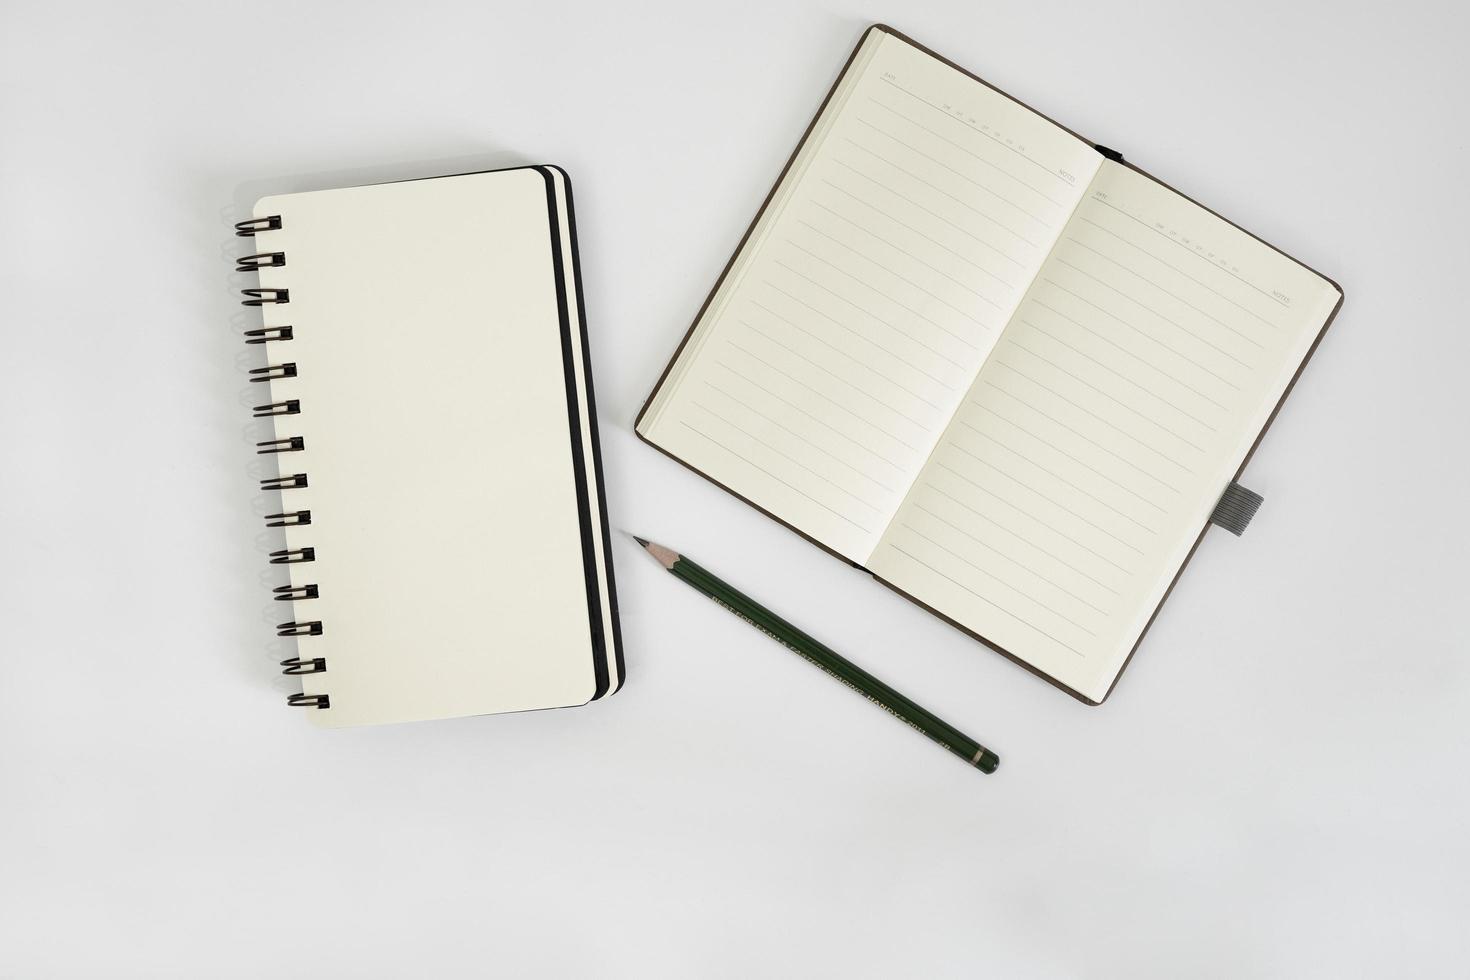 wit bureau met schetsboek en potlood erop. een notebookmodel op het bureau als indeling van de werkruimte. office-object geïsoleerd op een witte achtergrond. foto